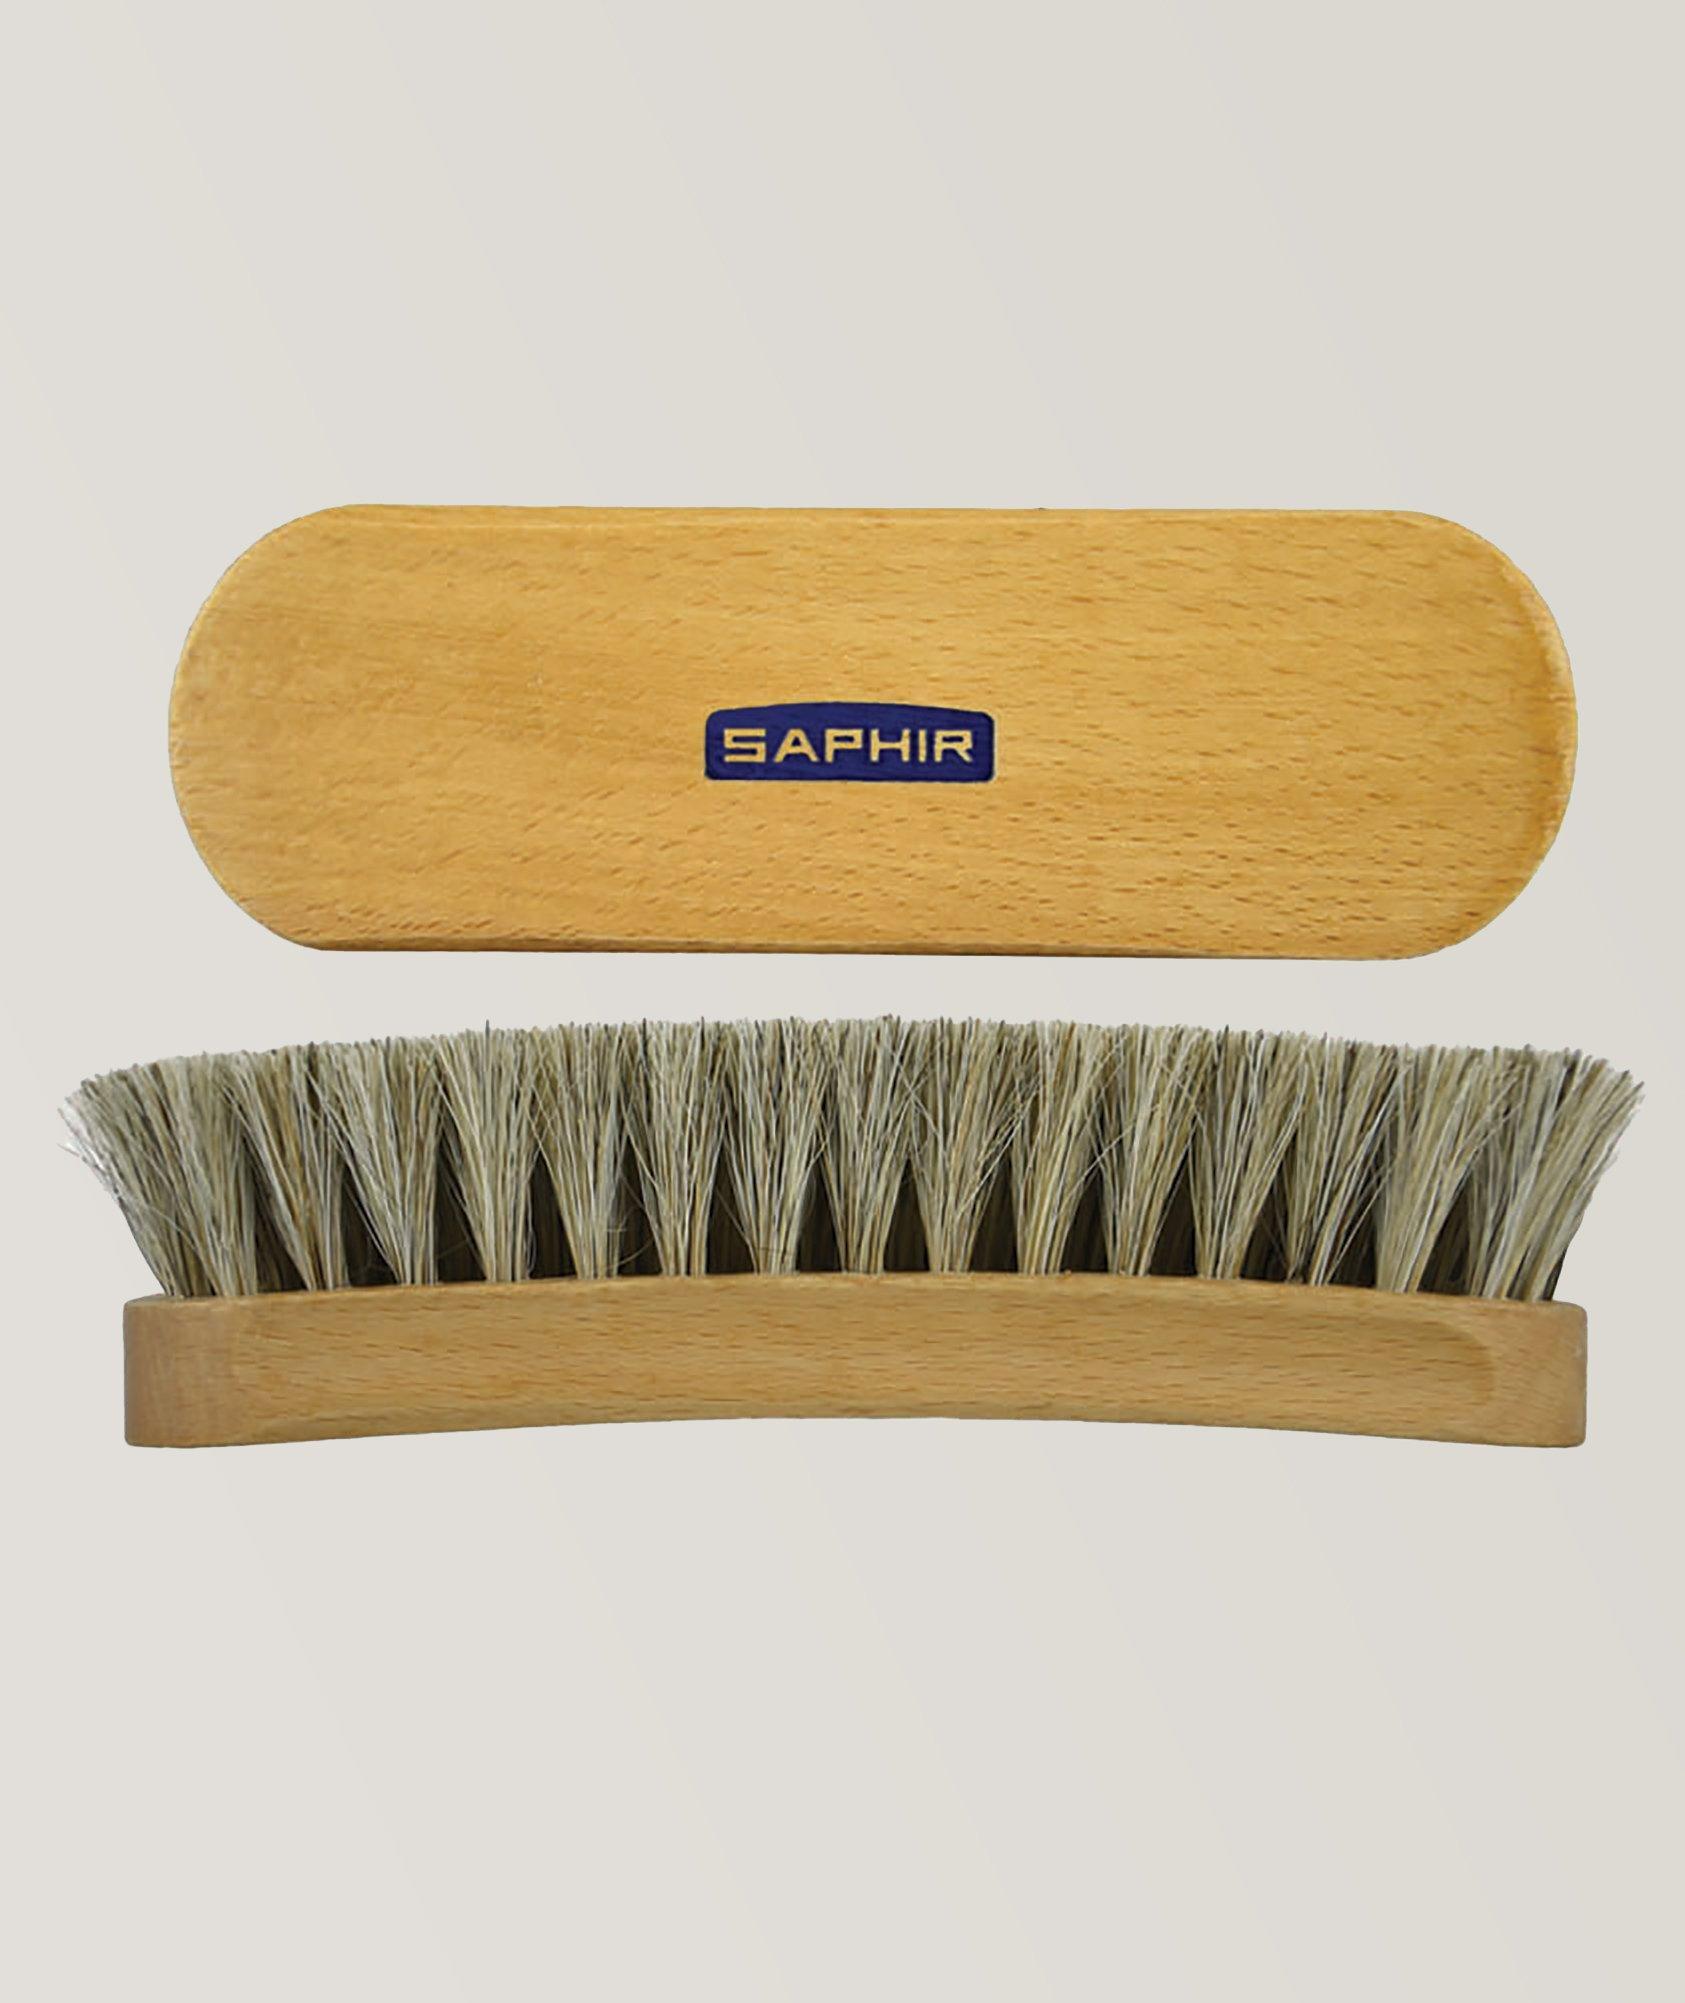 Saphir Shoe Shine Brush